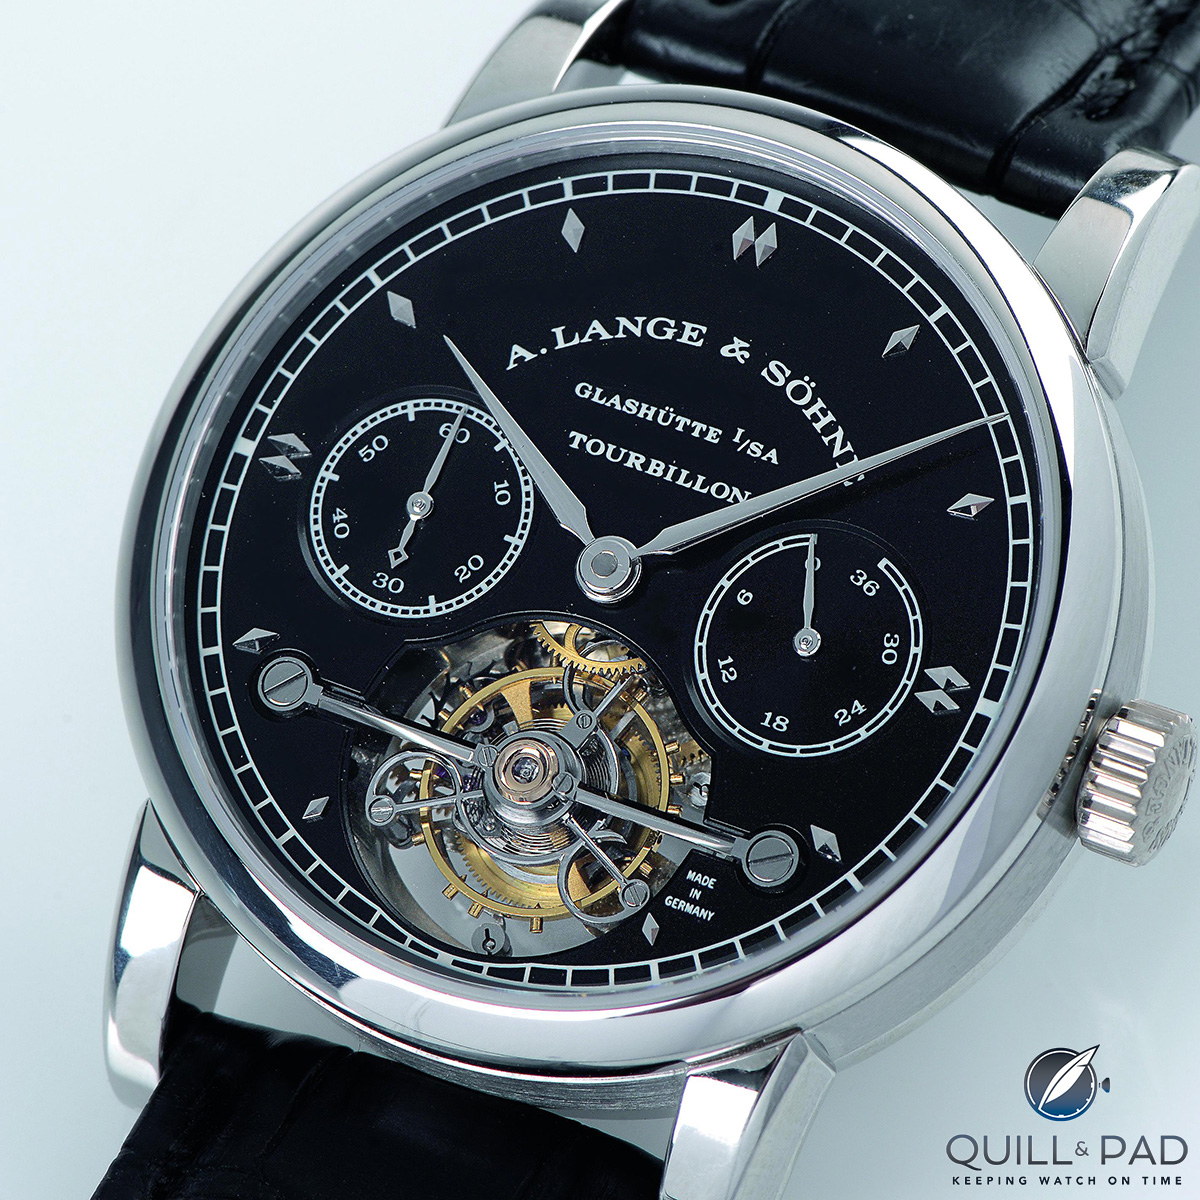 A. Lange & Söhne Tourbillon Pour le Mérite with black dial